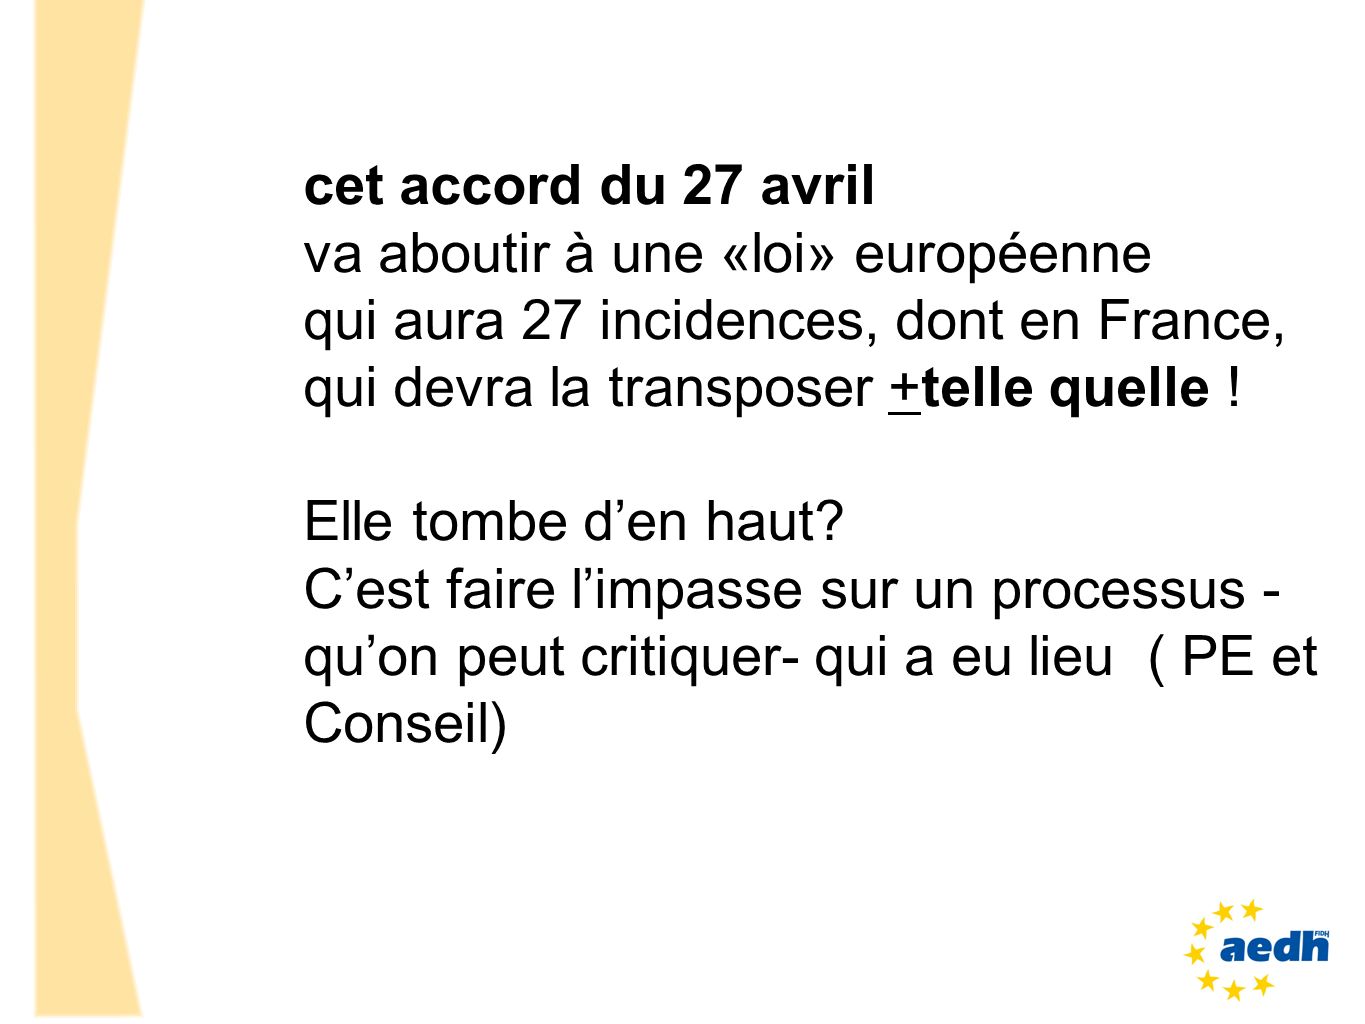 cet accord du 27 avril va aboutir à une «loi» européenne. qui aura 27 incidences, dont en France, qui devra la transposer +telle quelle !